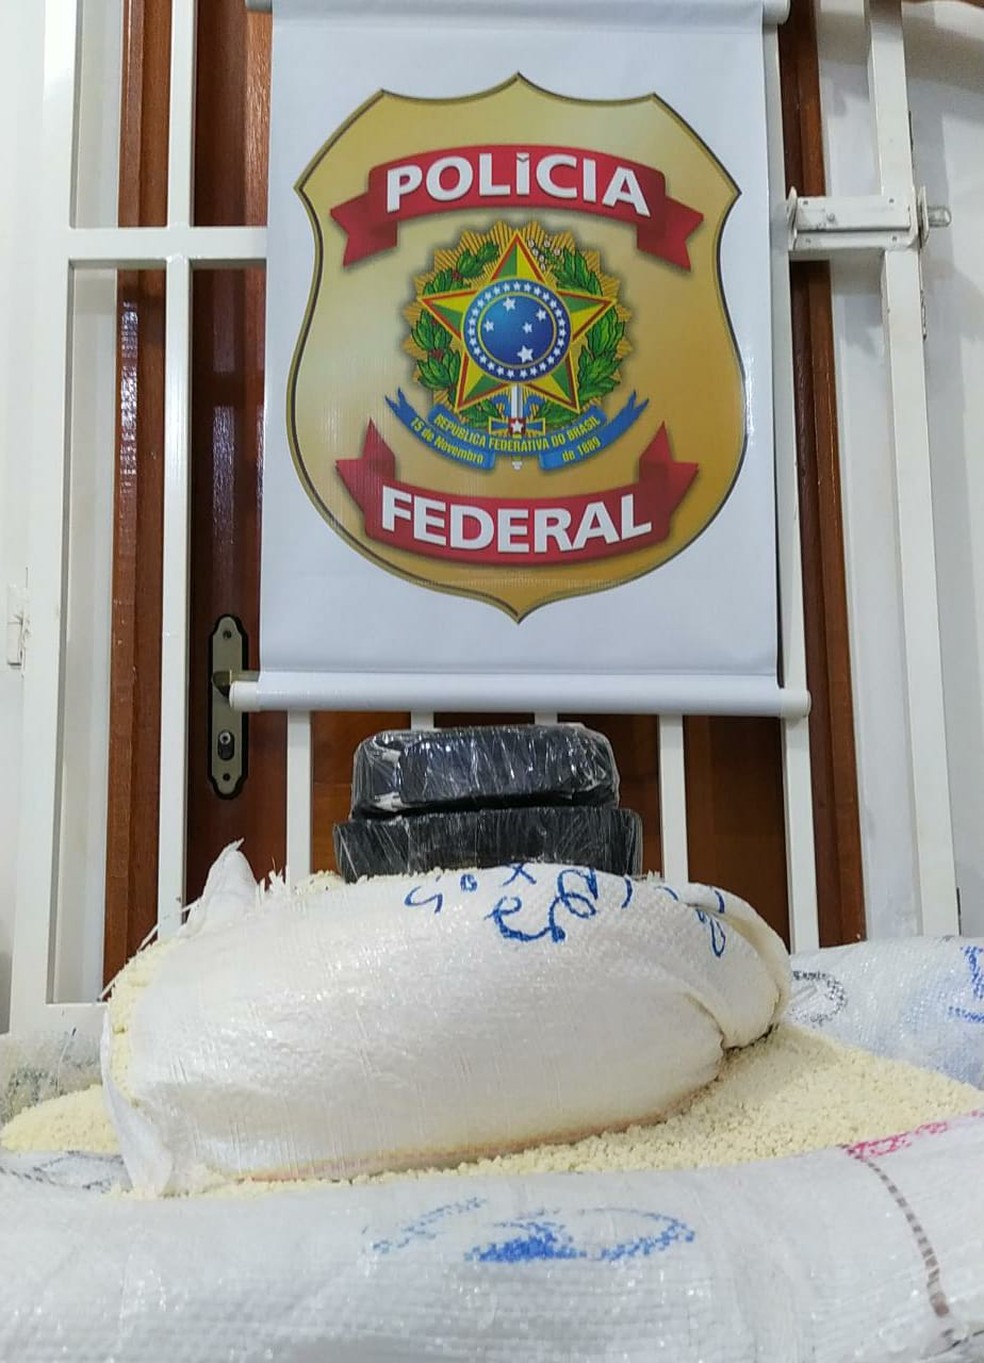  Investigações começaram após a apreensão de cocaína escondida em encomendas de farinha  — Foto: Asscom/Polícia Federal